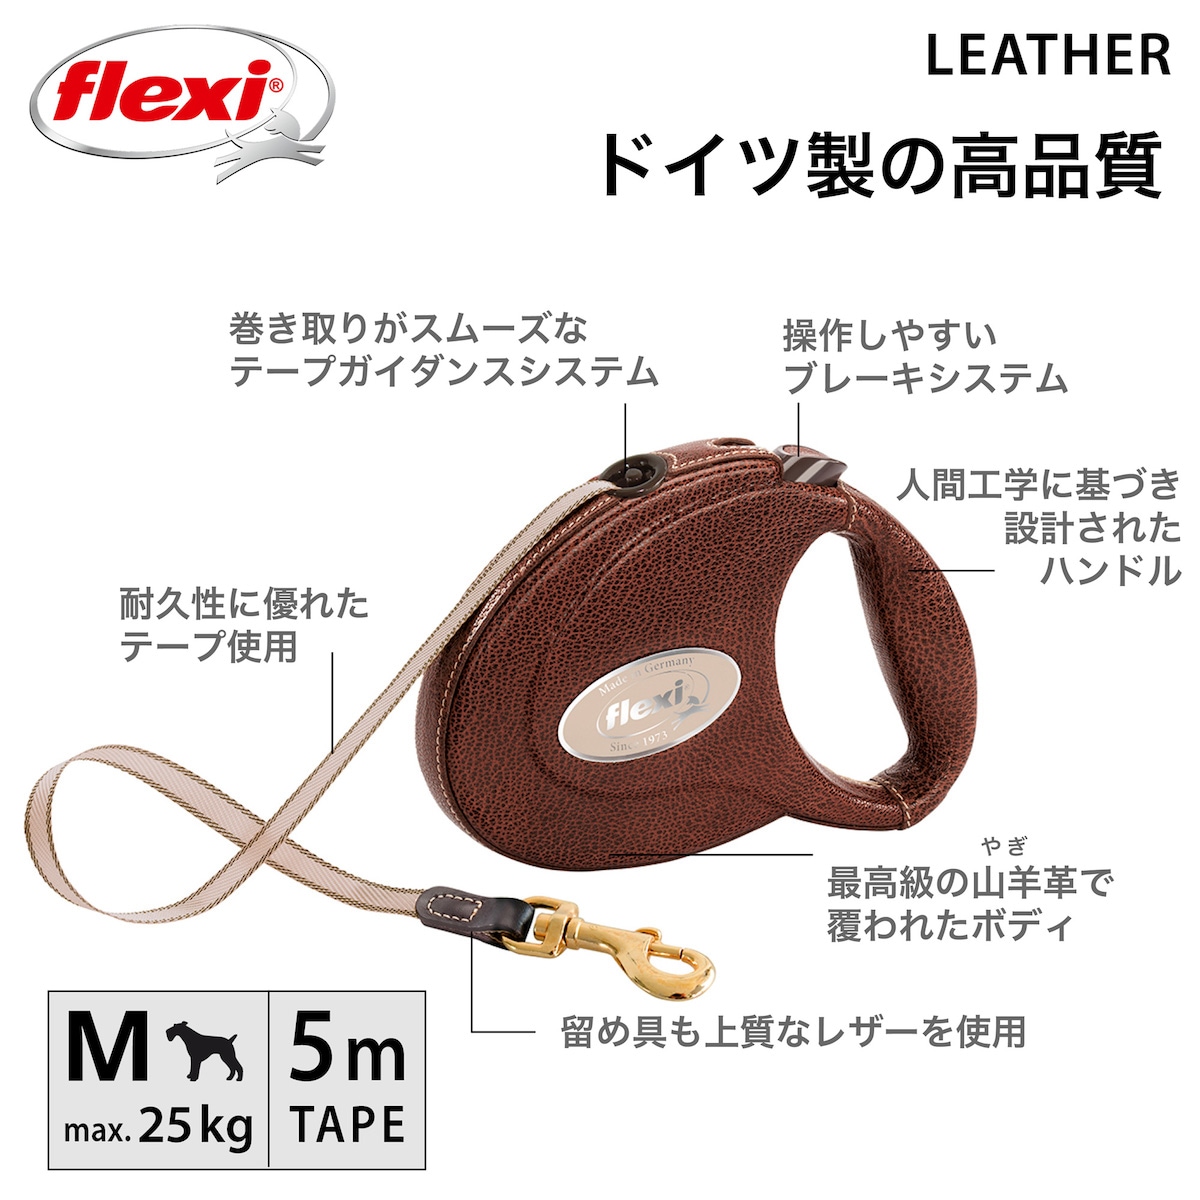 フレキシ 伸縮リード Leather - レザーの特徴